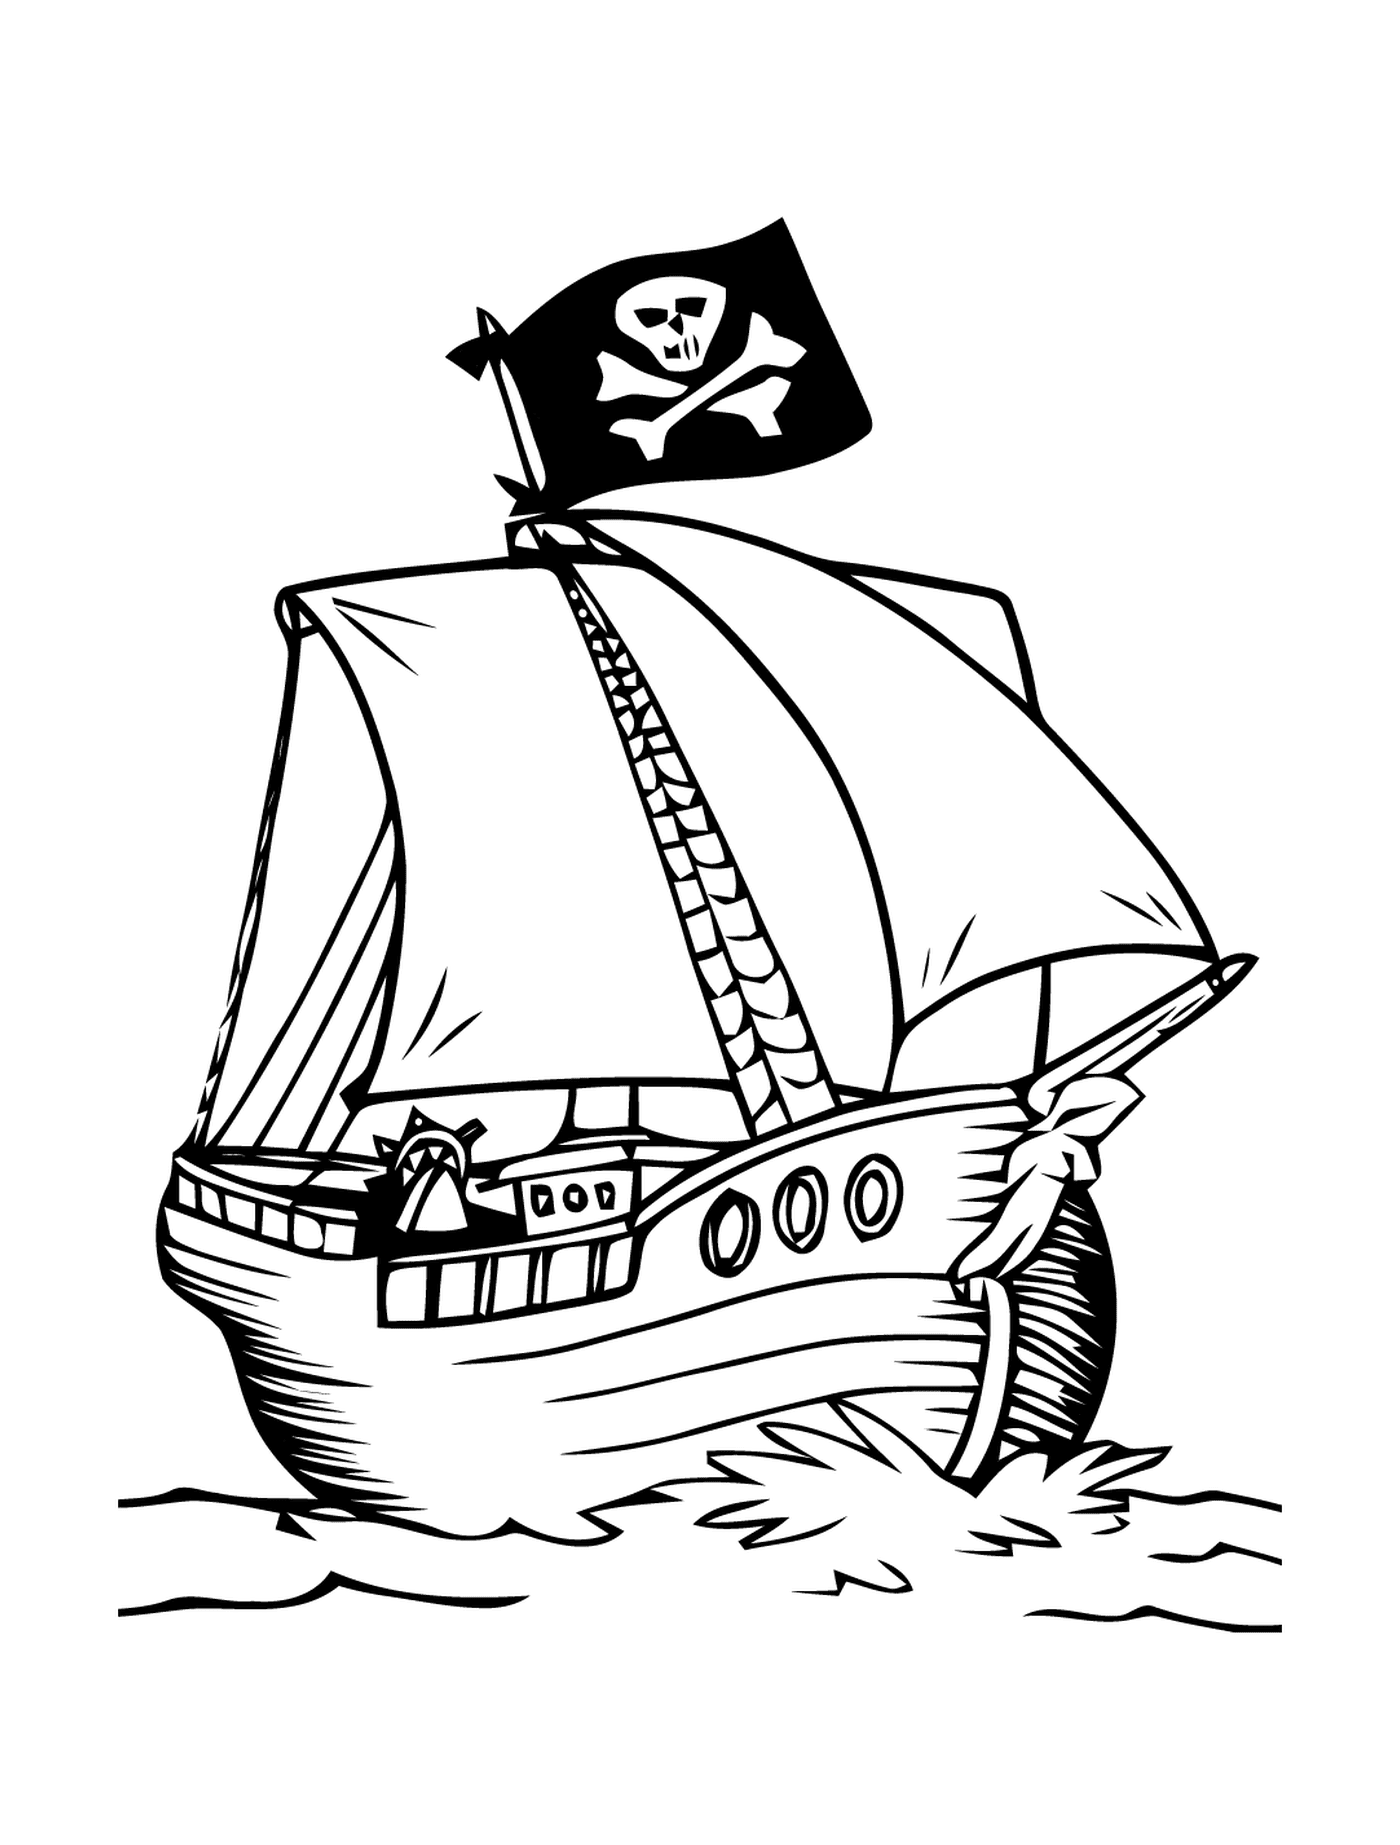  Barco pirata com bandeira assustadora 